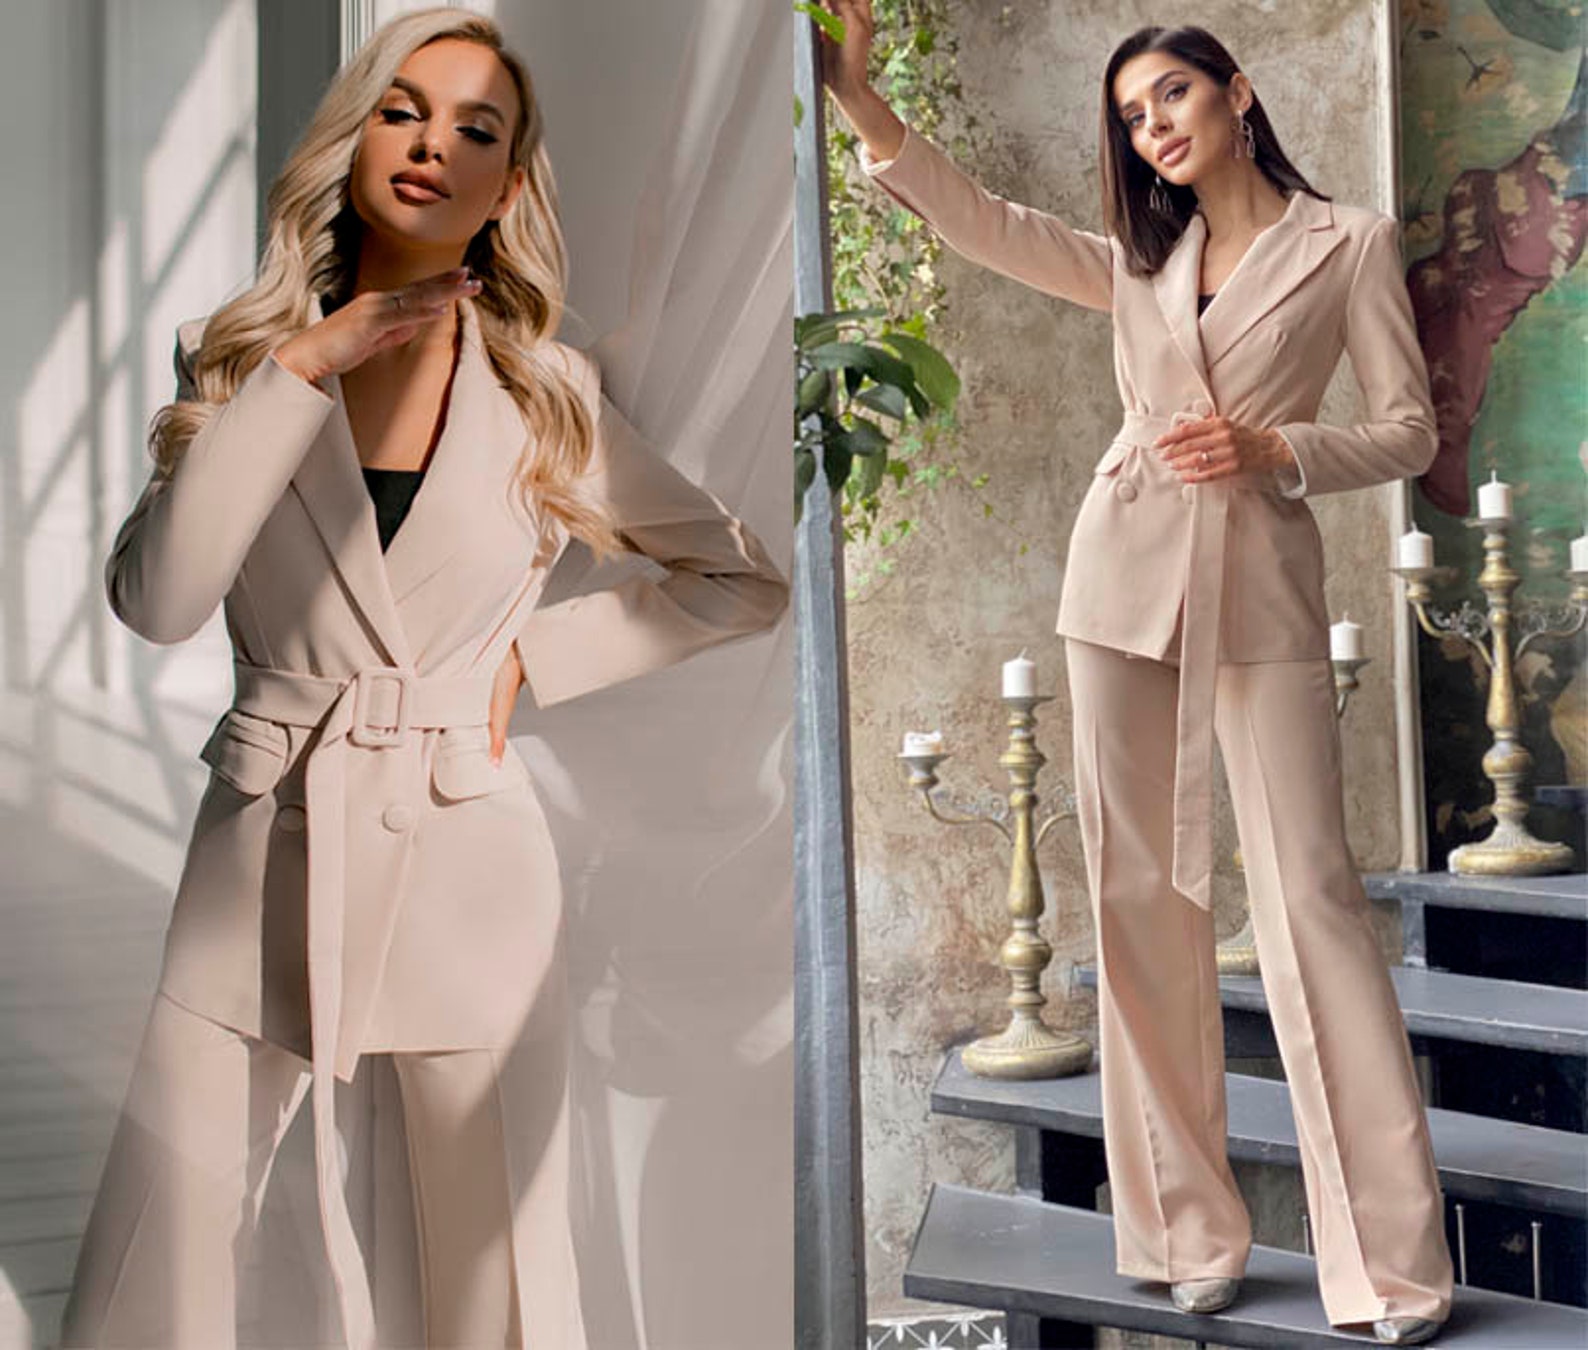 Women Suit Set Elegant Cocktail Pantsuit Jacket Palazzo Pants | Etsy